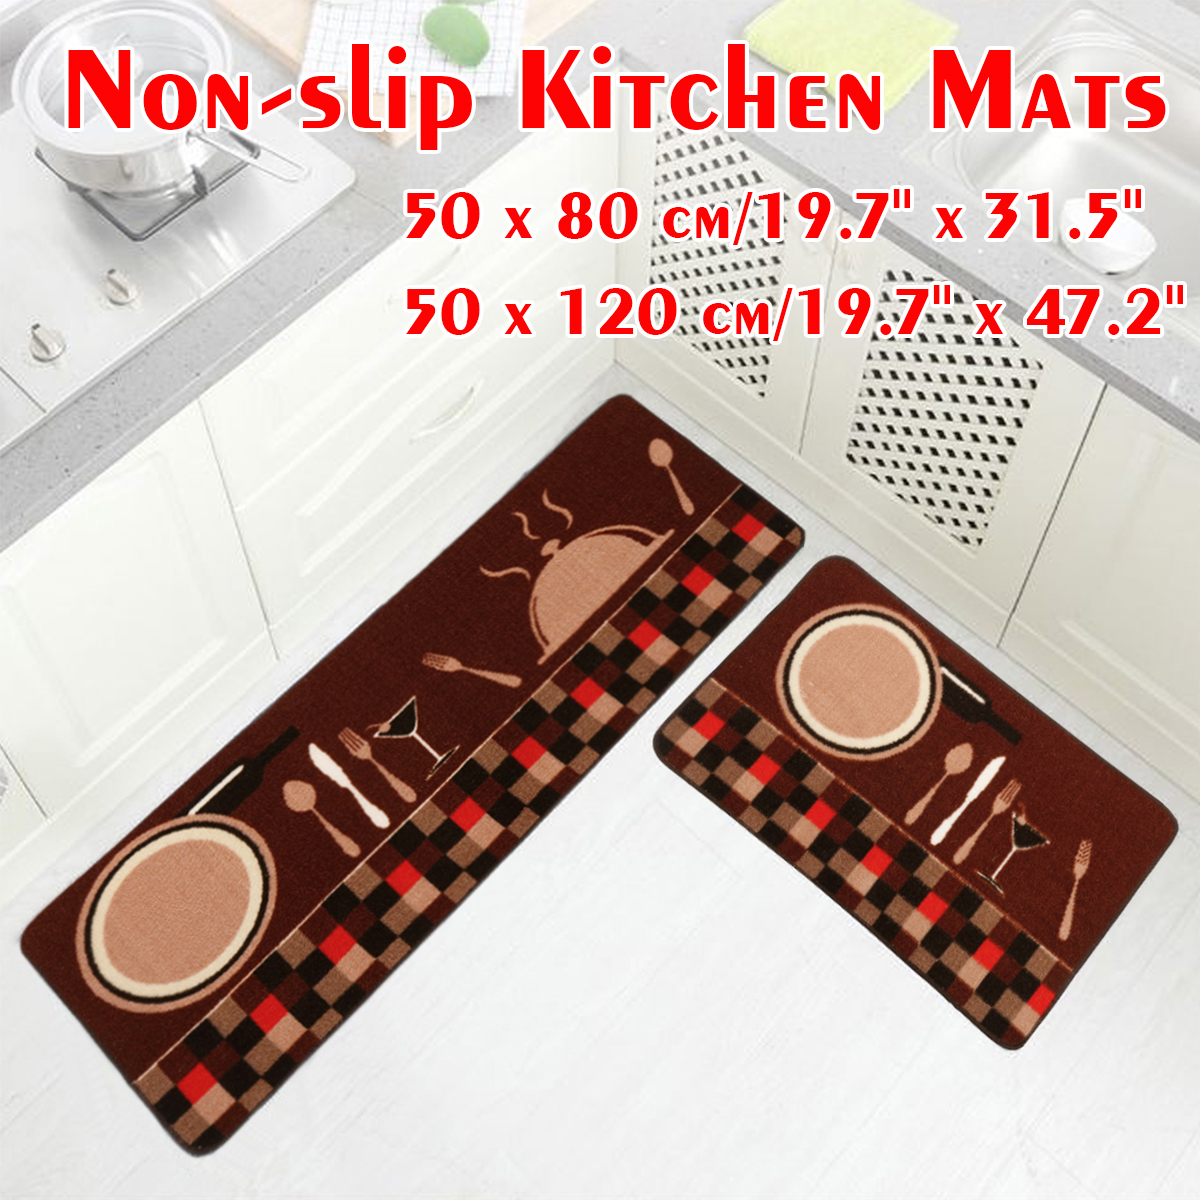 Non-slip-Door-Floor-Rug-Mat-Kitchen-Bathroom-Bedside-Soft-Carpet-Home-Decorations-1457106-1